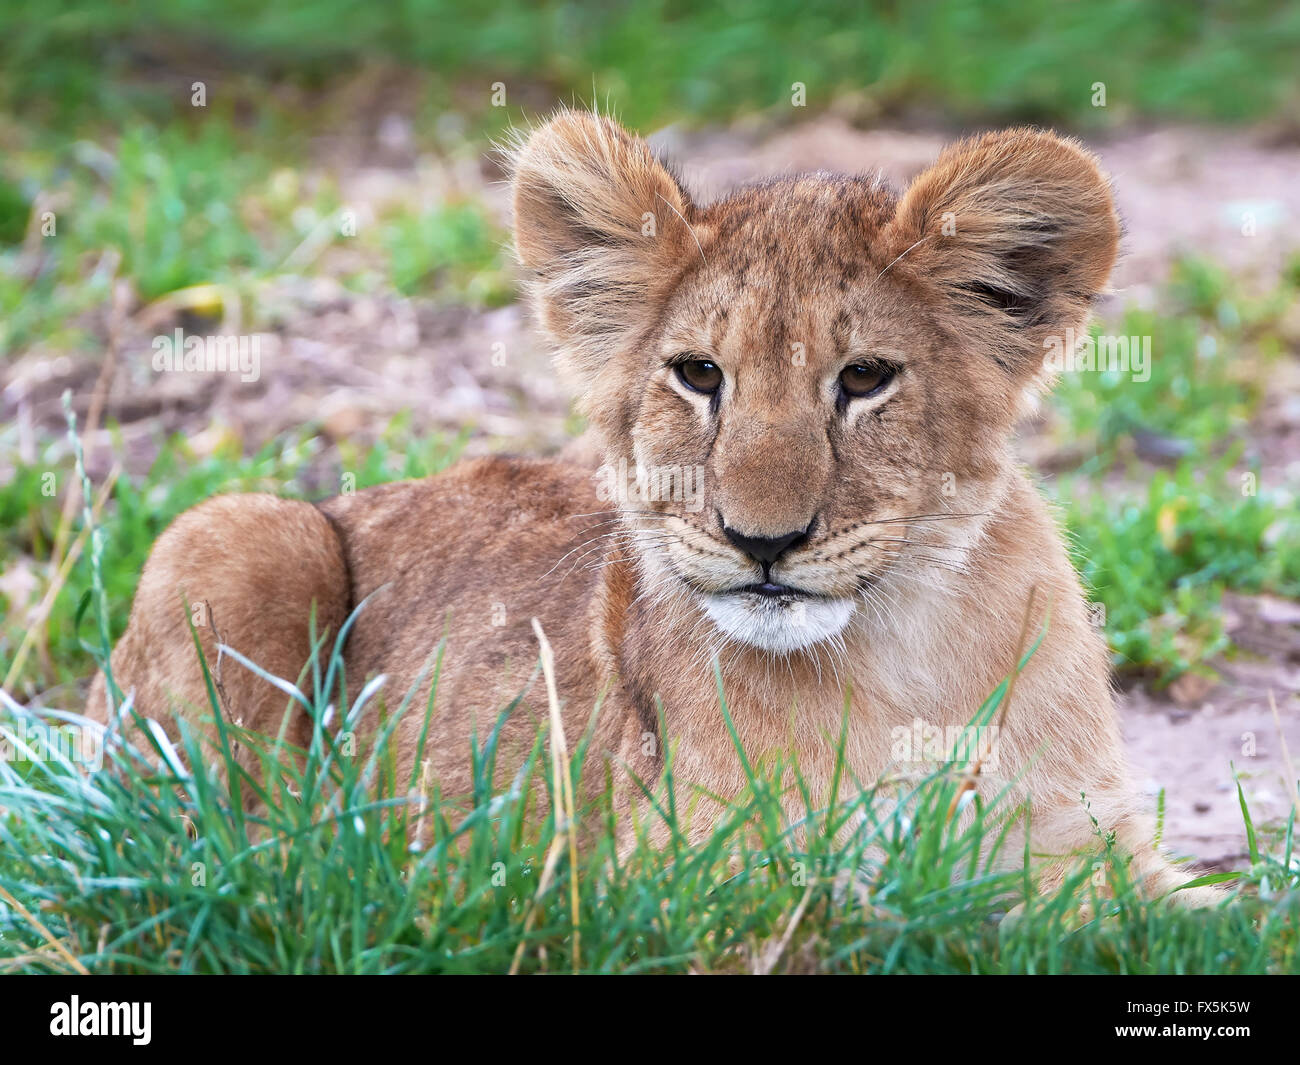 Primo piano immagine di un Lion cub in appoggio nel suo habitat Foto Stock